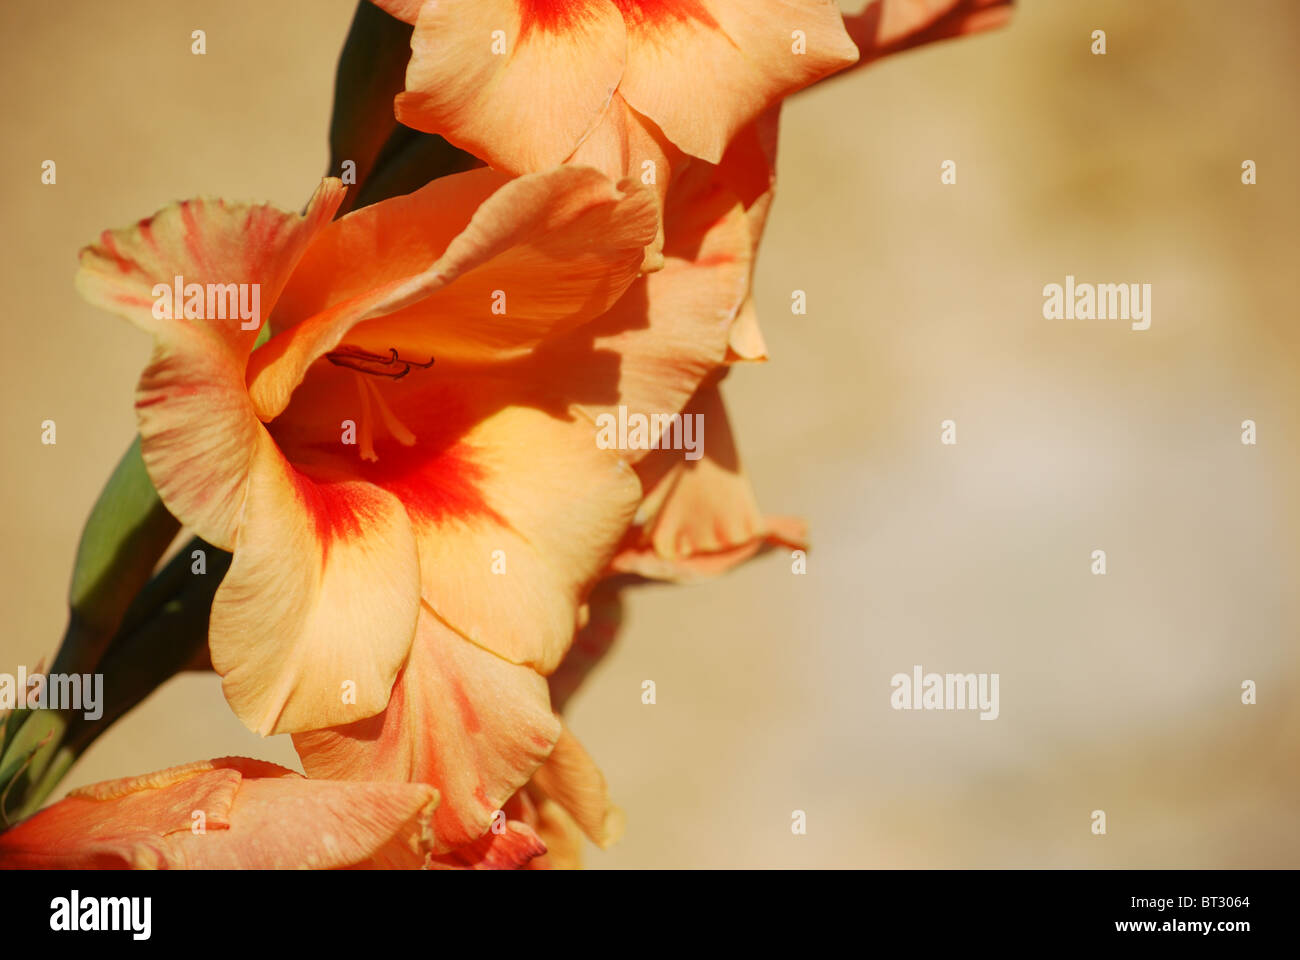 Orangefarbene Blume Gladiole auf sandfarbenem Hintergrund Stockfoto